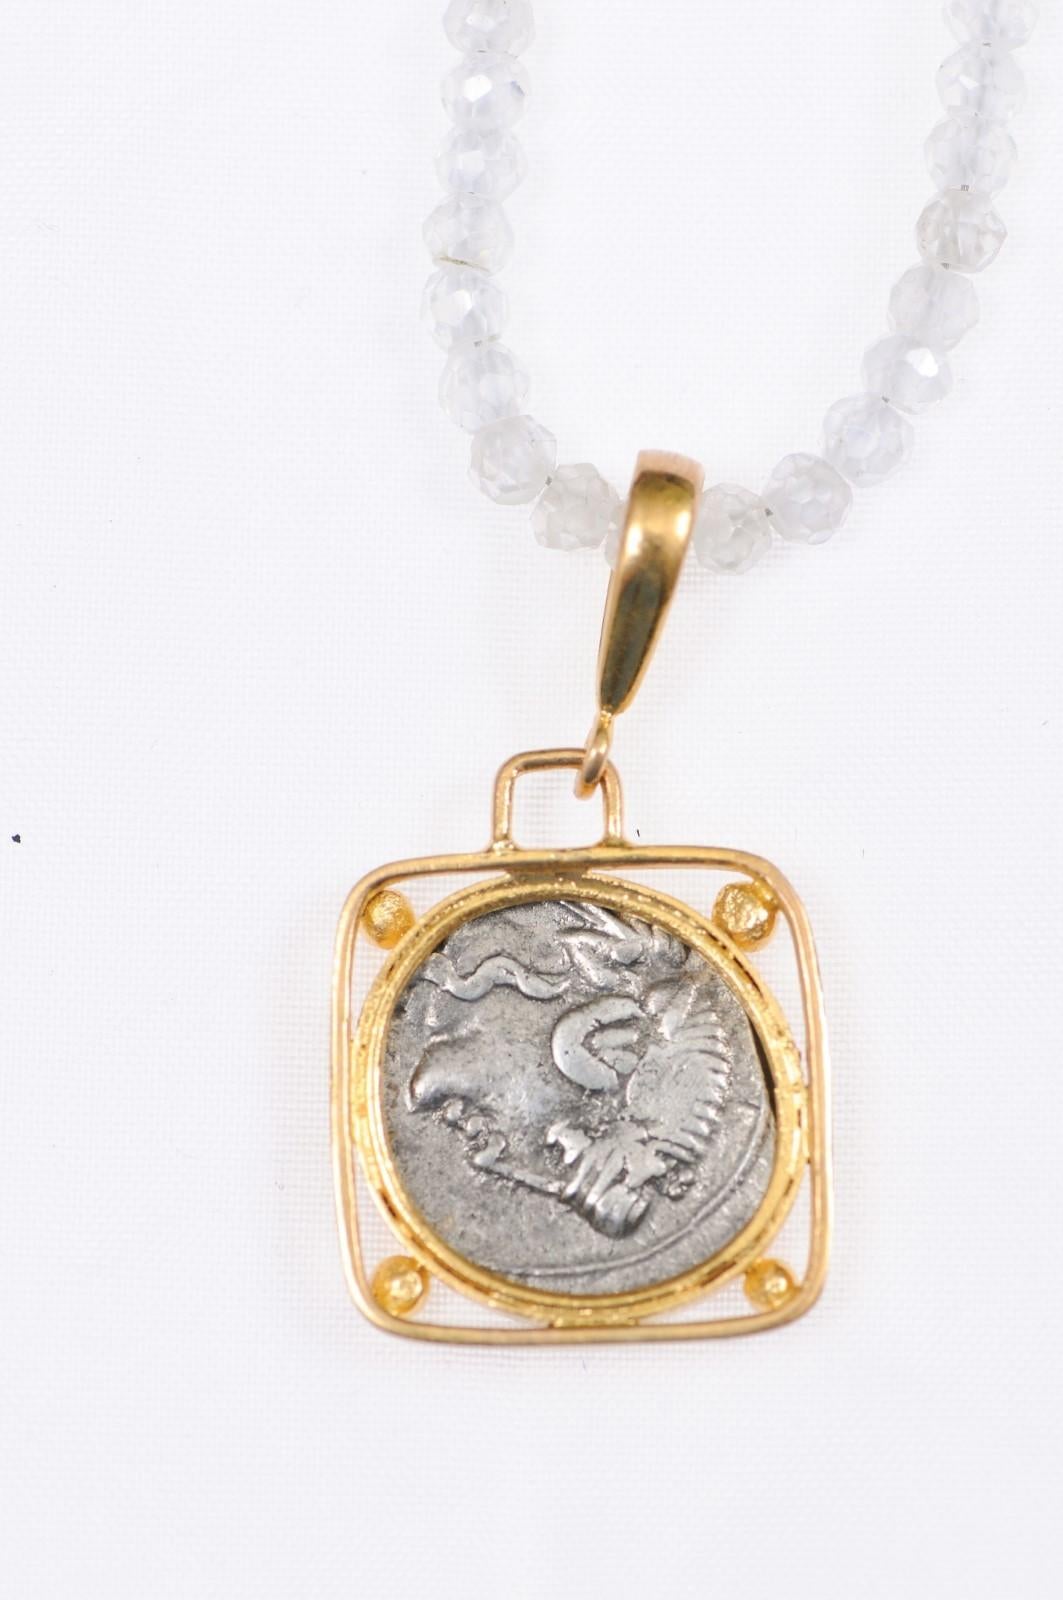 Une authentique pièce de Denier en argent de Q. Titius (Rome, vers 90 av. J.-C.), sertie dans un chaton en or 22k personnalisé, suspendue dans un chaton carré avec des accents de perles d'or à chaque coin, et une anse en or 22k. L'avers de cette